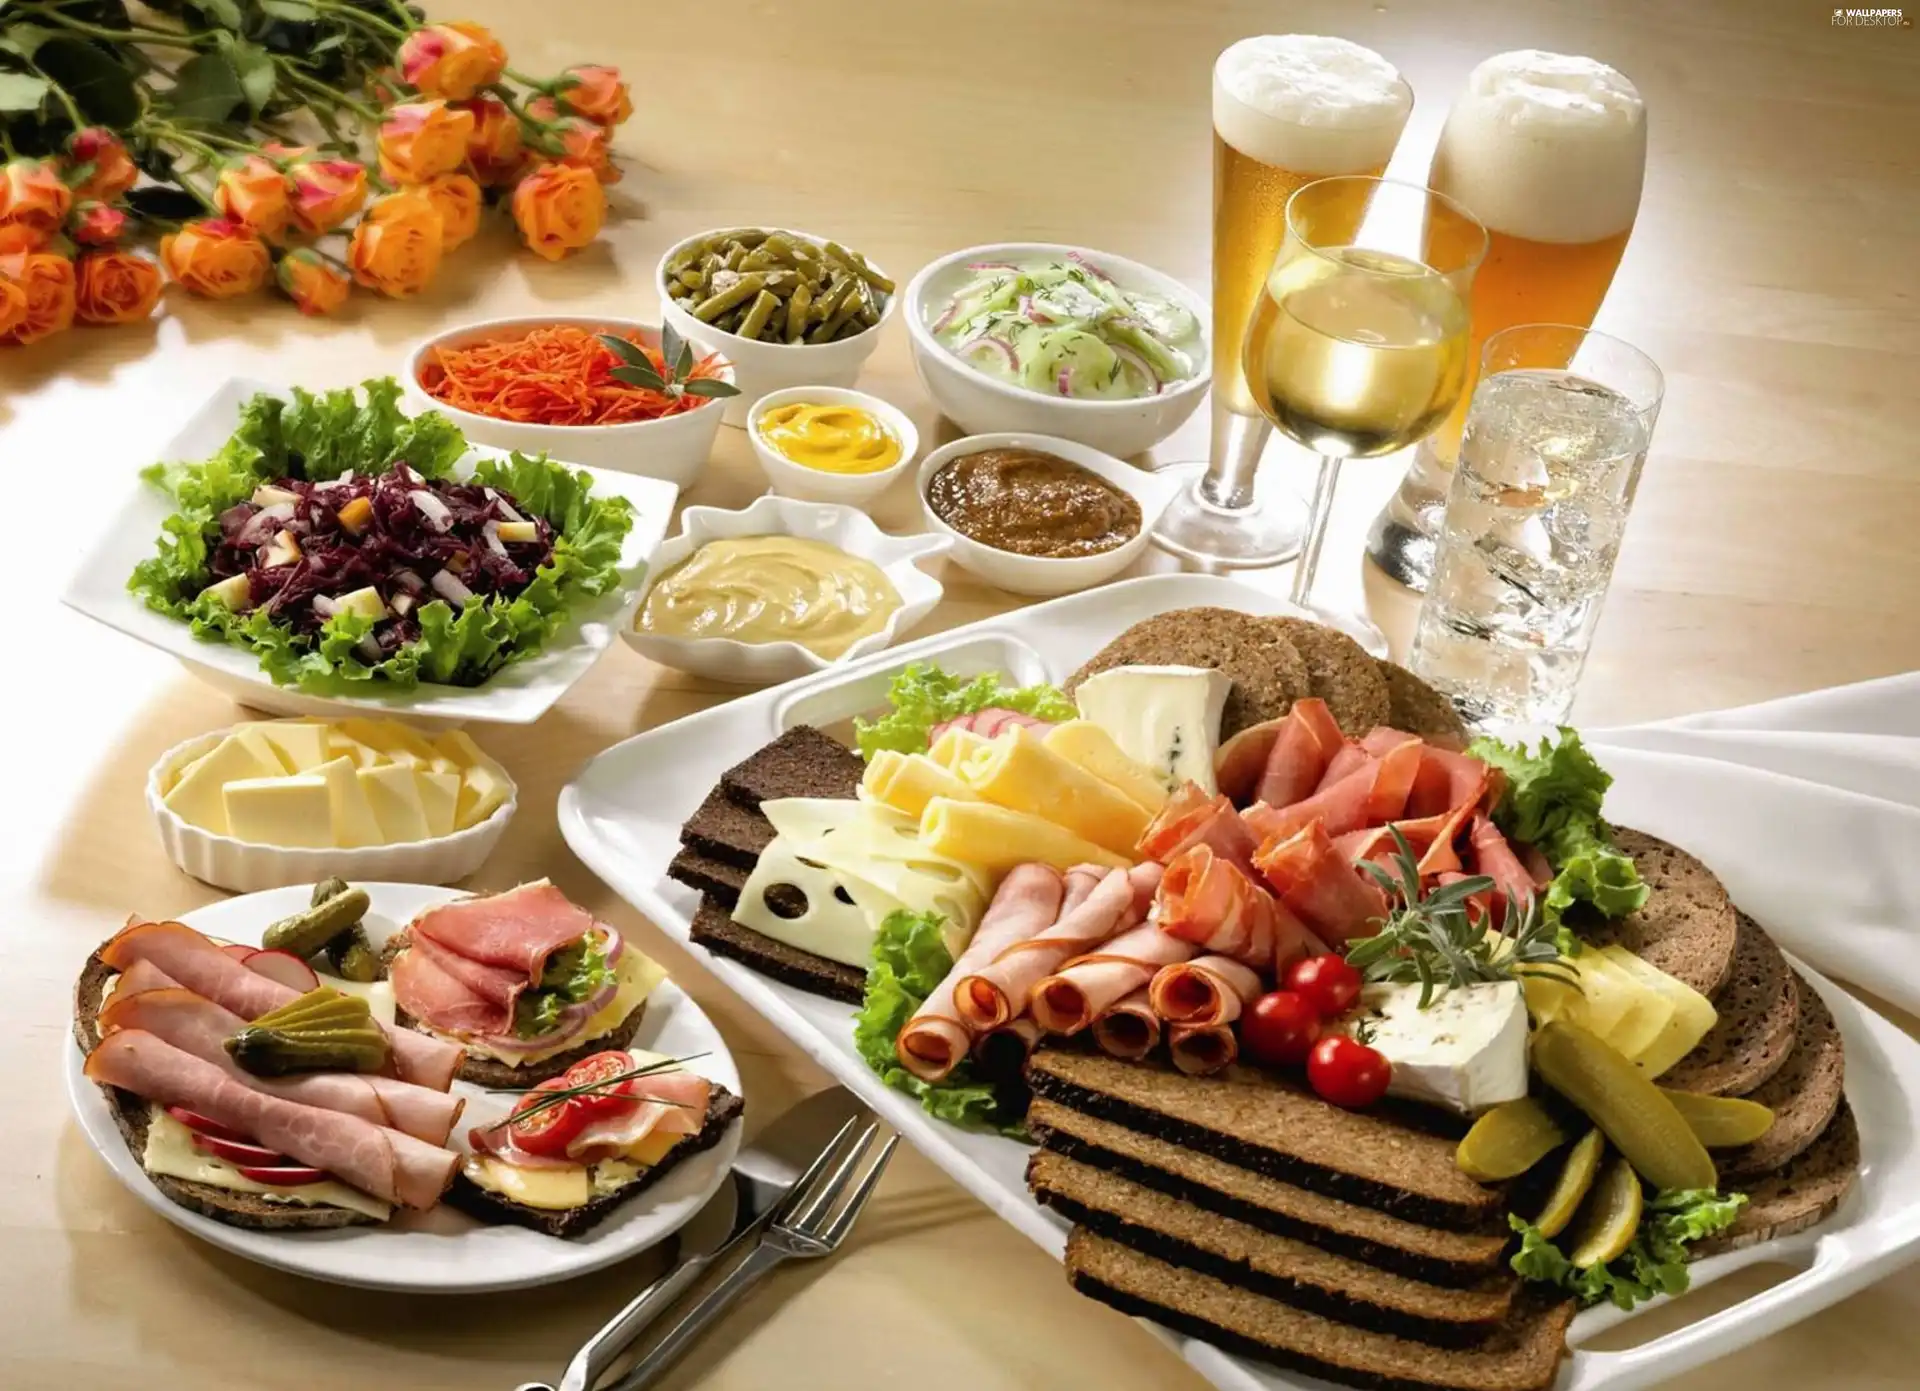 Plates, Beer, dinner, food